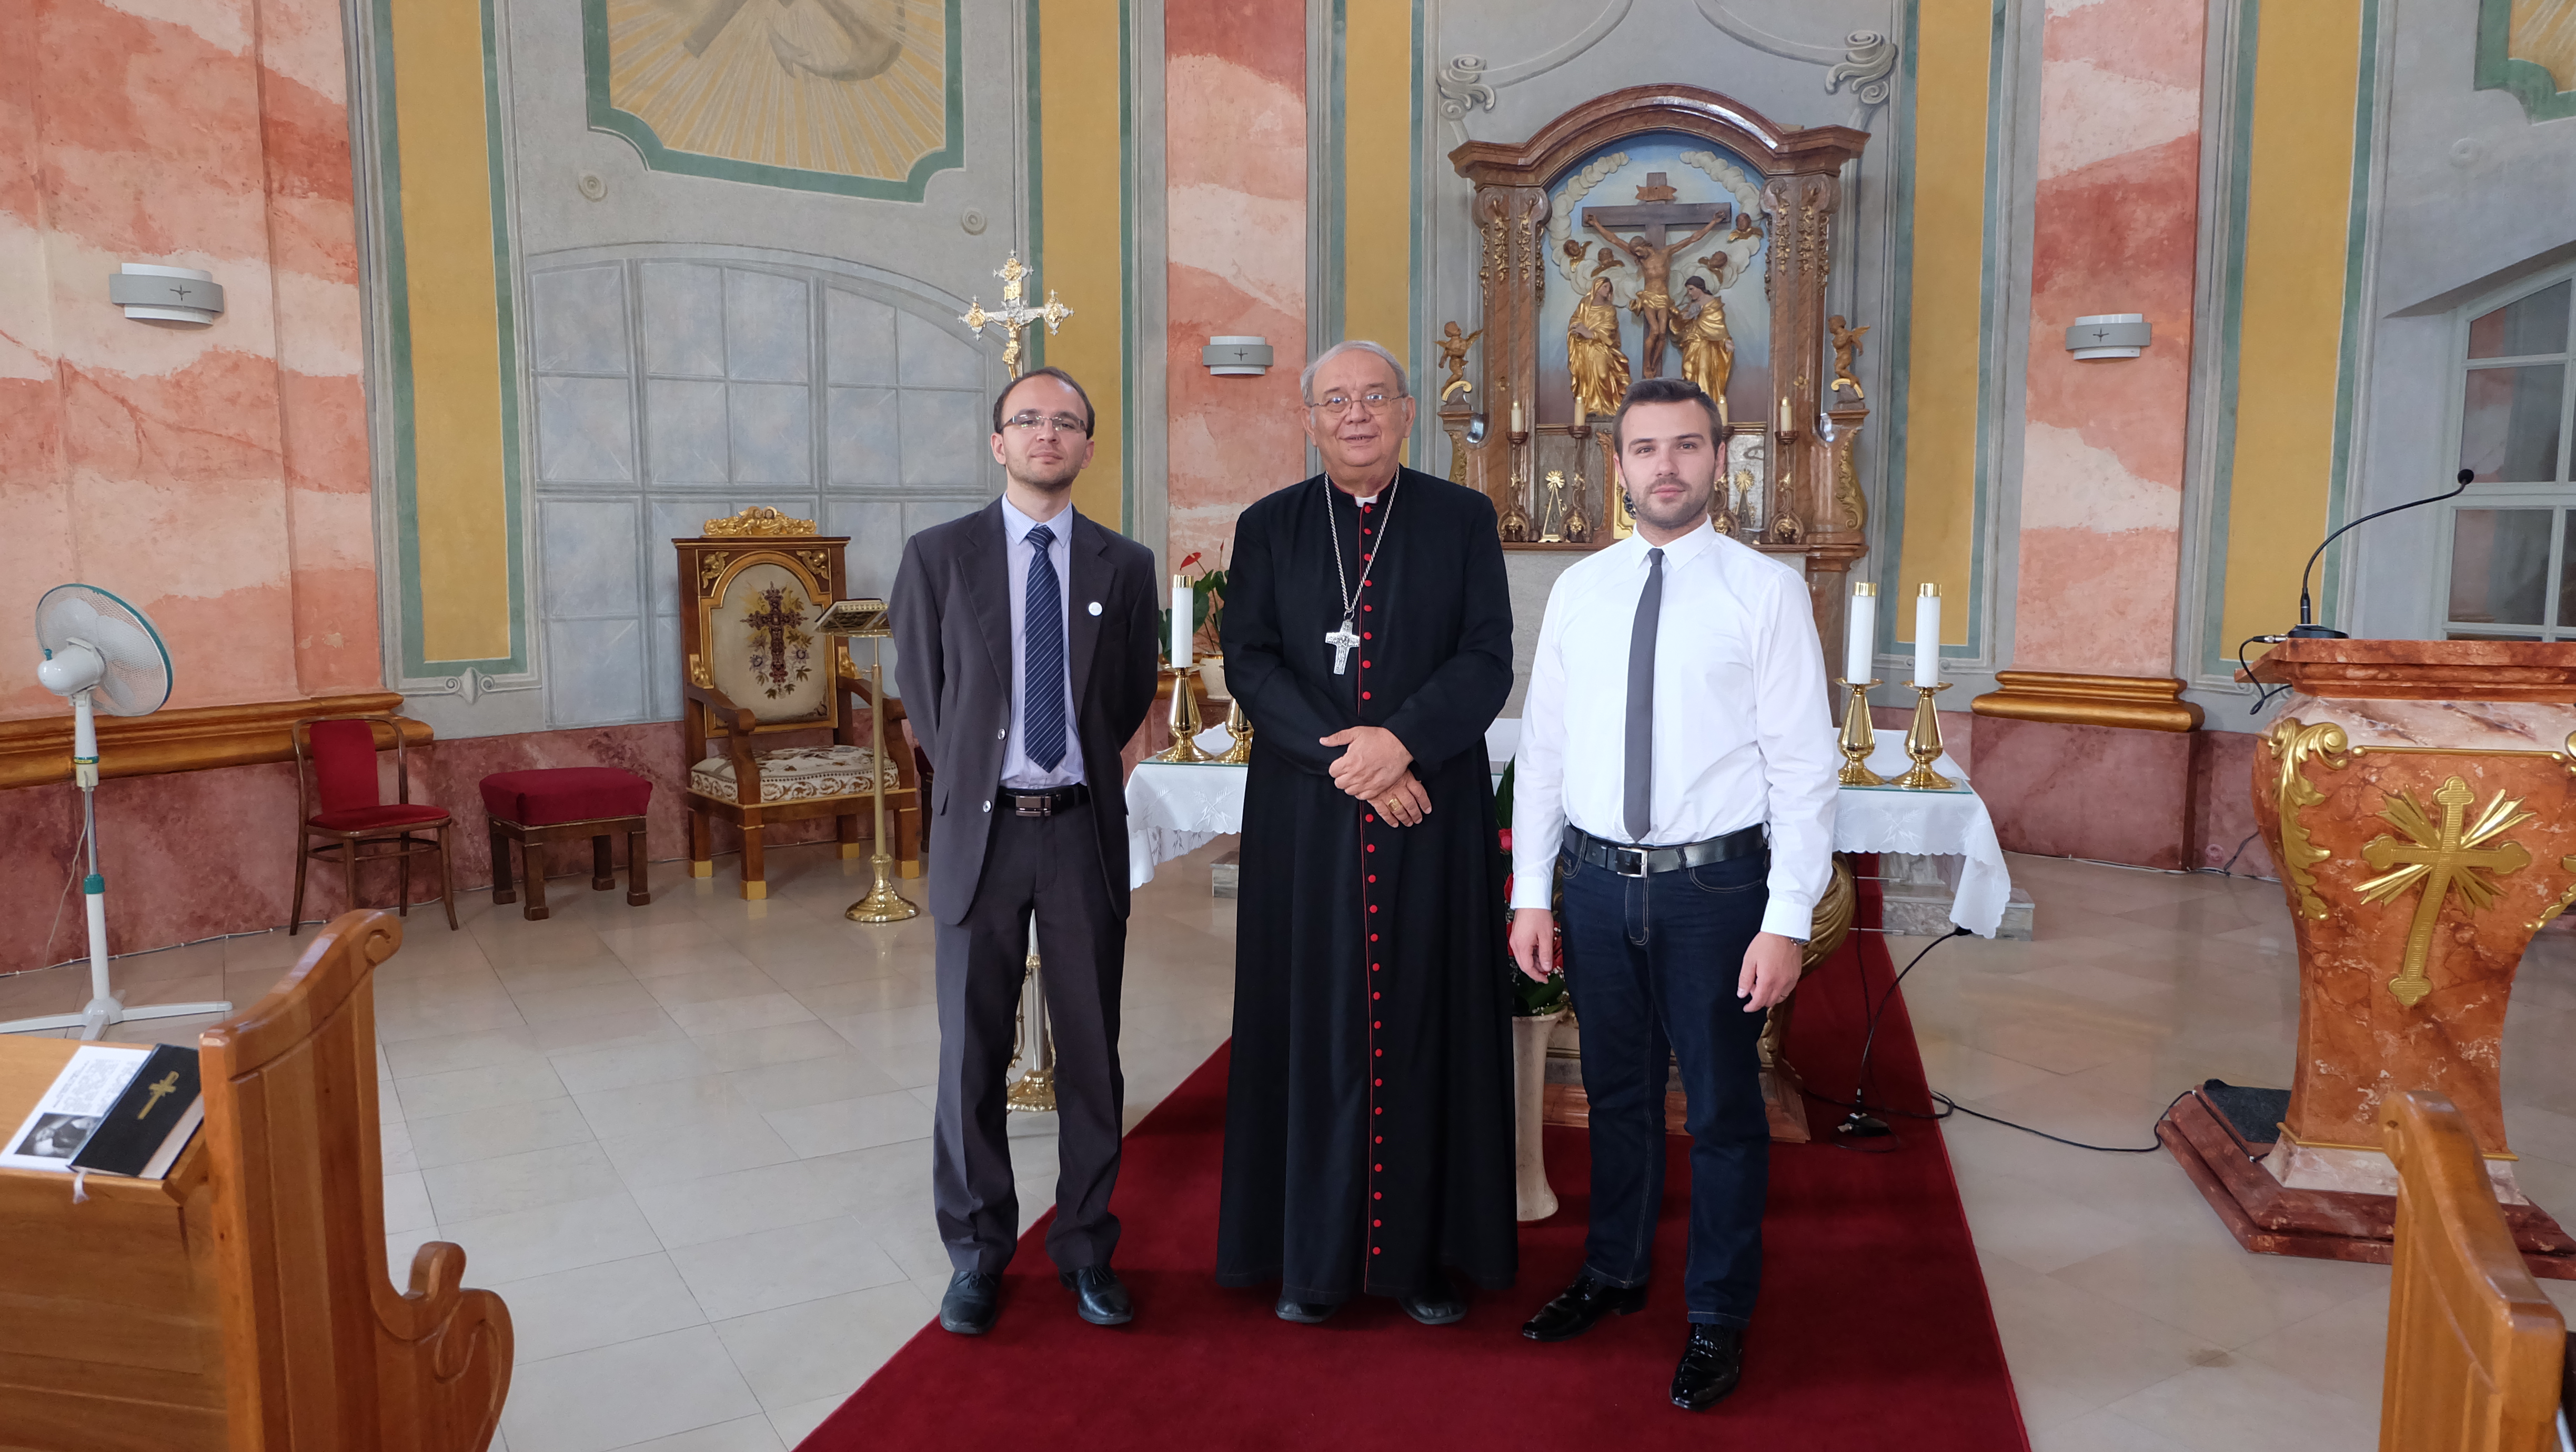 Vľavo redaktor Ivo Novák, vpravo programový riaditeľ Rádia LUMEN Martin Šajgalík s trnavský arcibiskupom v kaplnke na arcibiskupskom úrade.